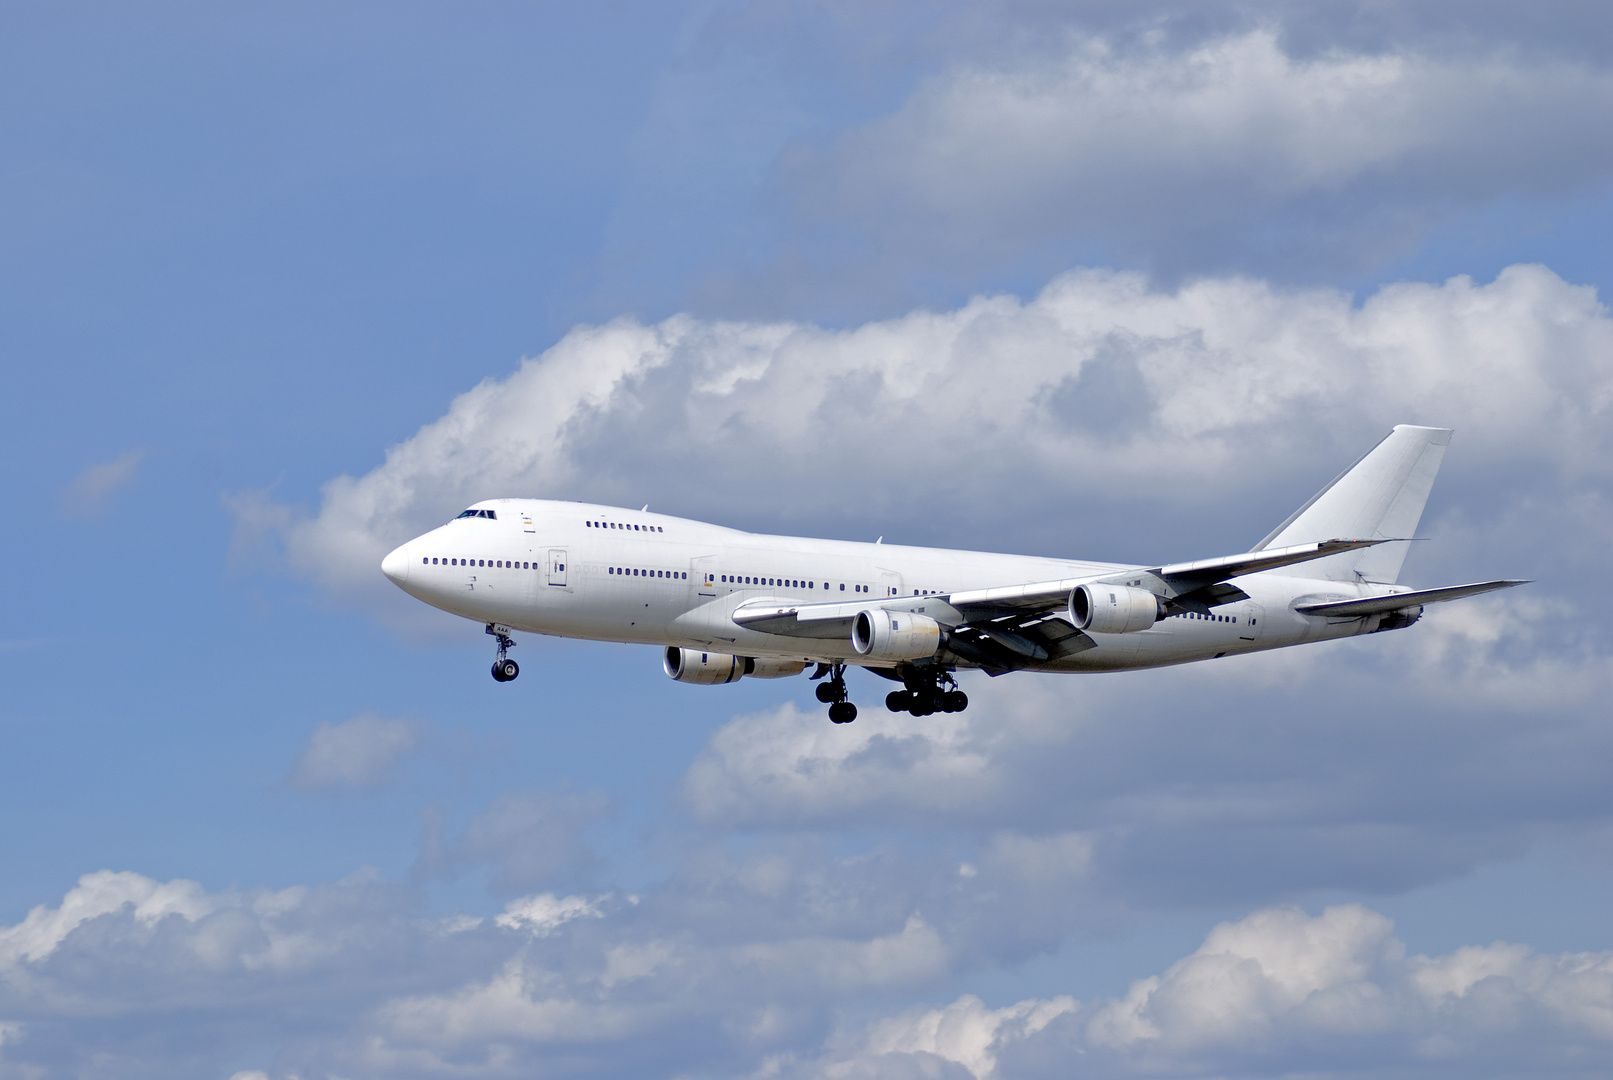 Boing 747 im Landeanflug auf FRA